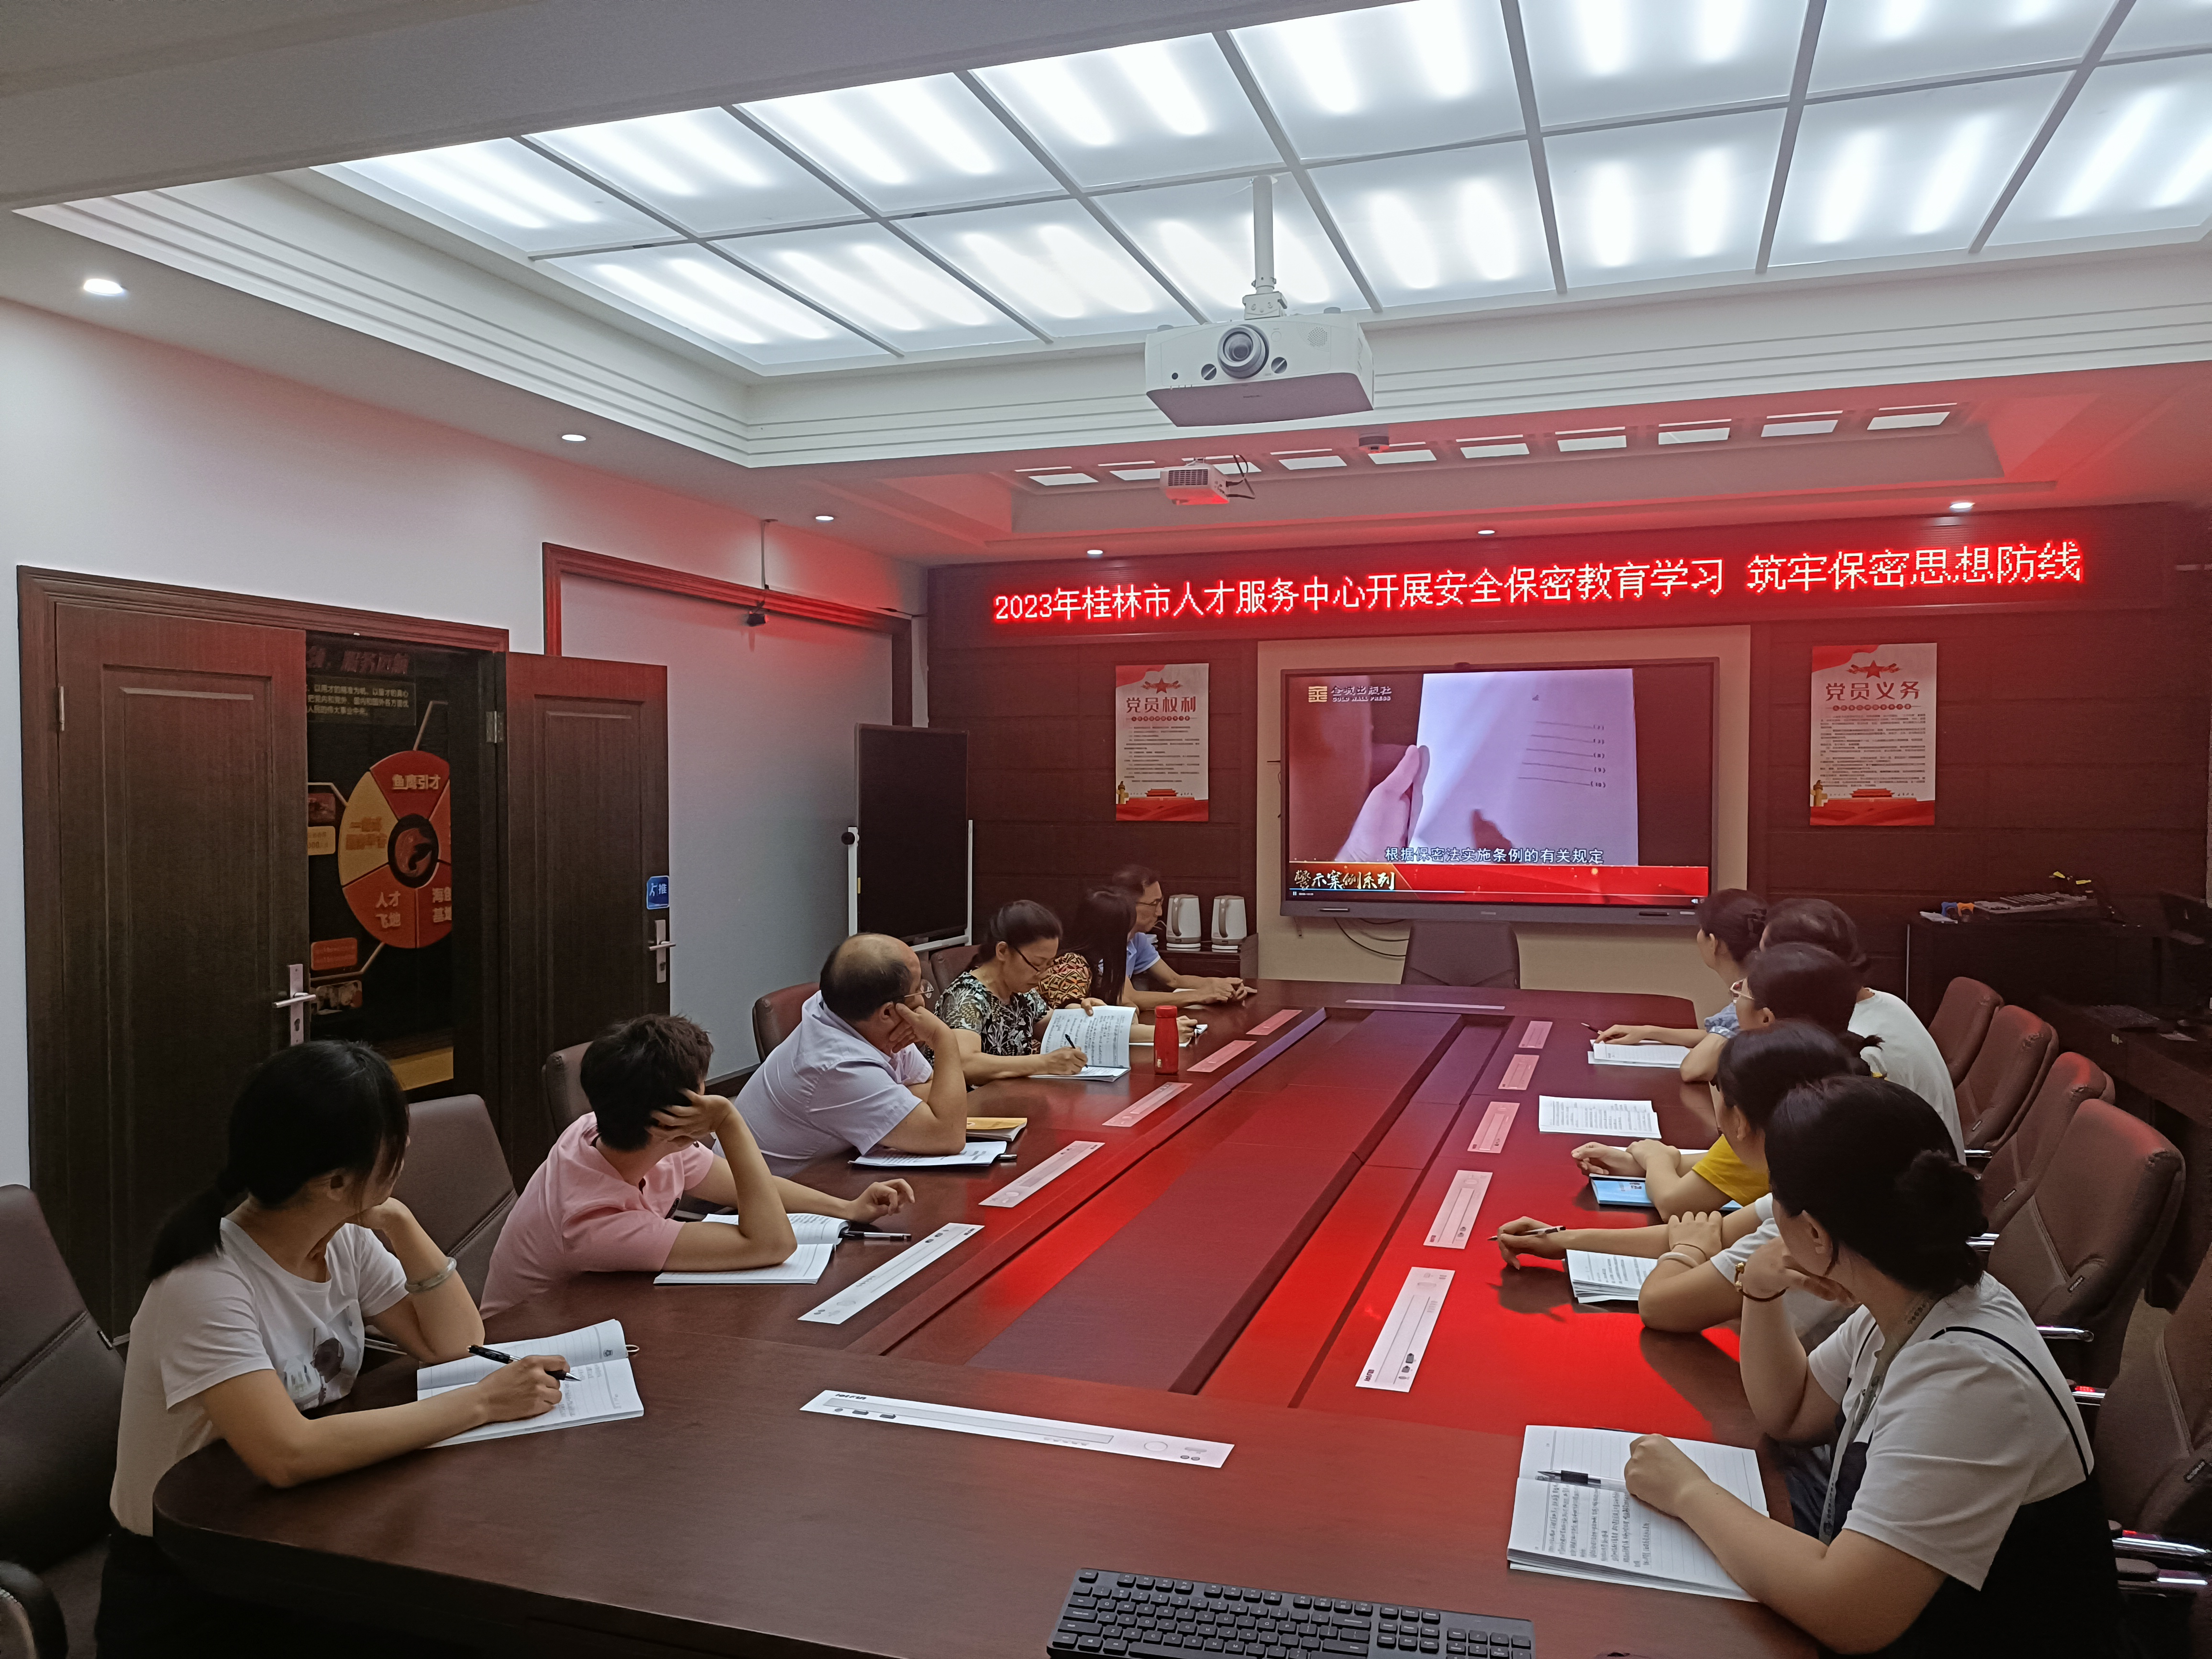 桂林市人才服务中心开展安全保密教育学习 筑牢保密思想防线